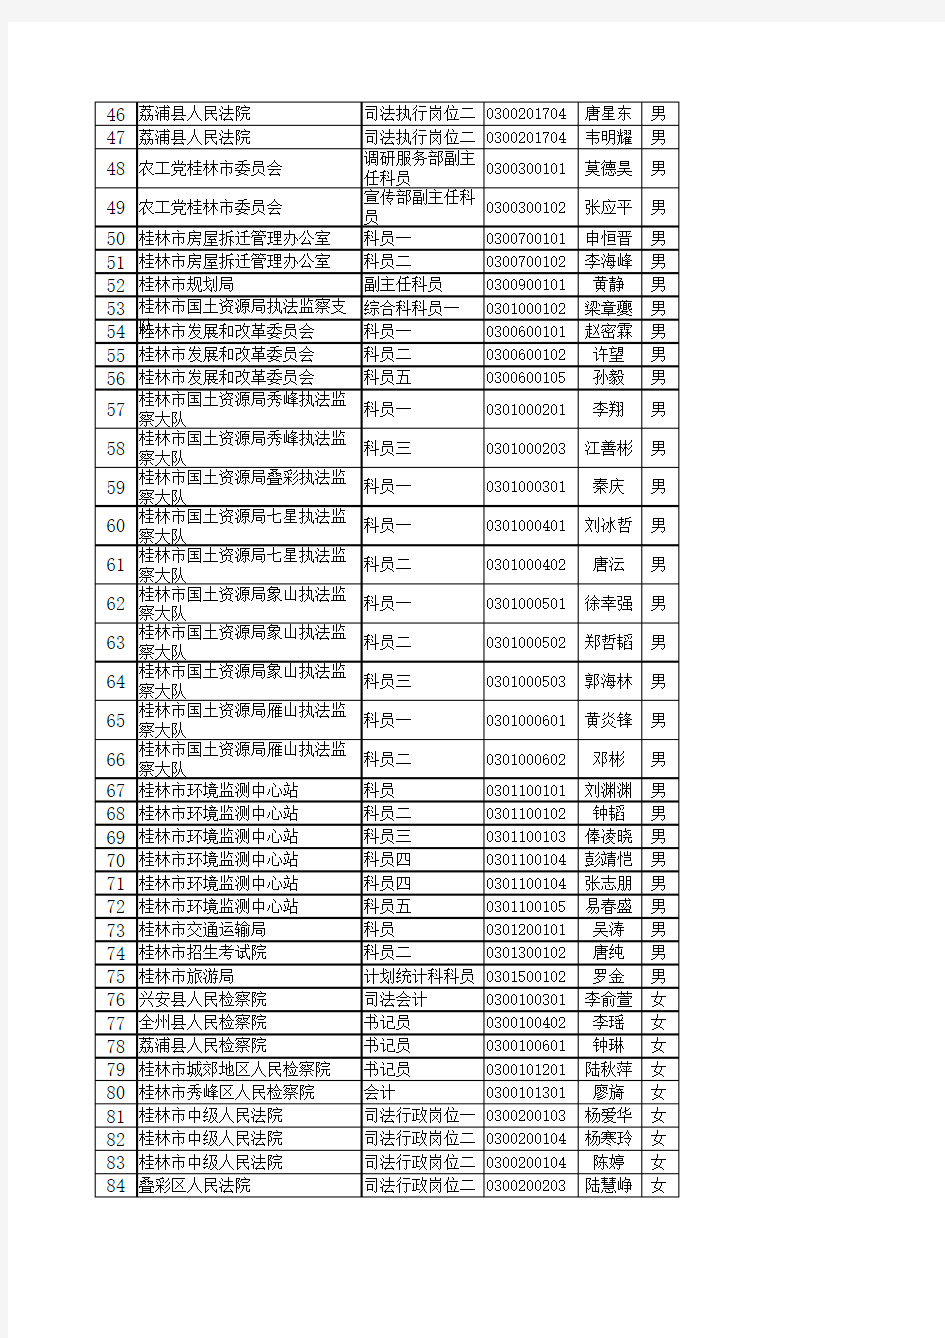 体检名单(第二批)xls - 广西人事考试网 广西公务员考试网